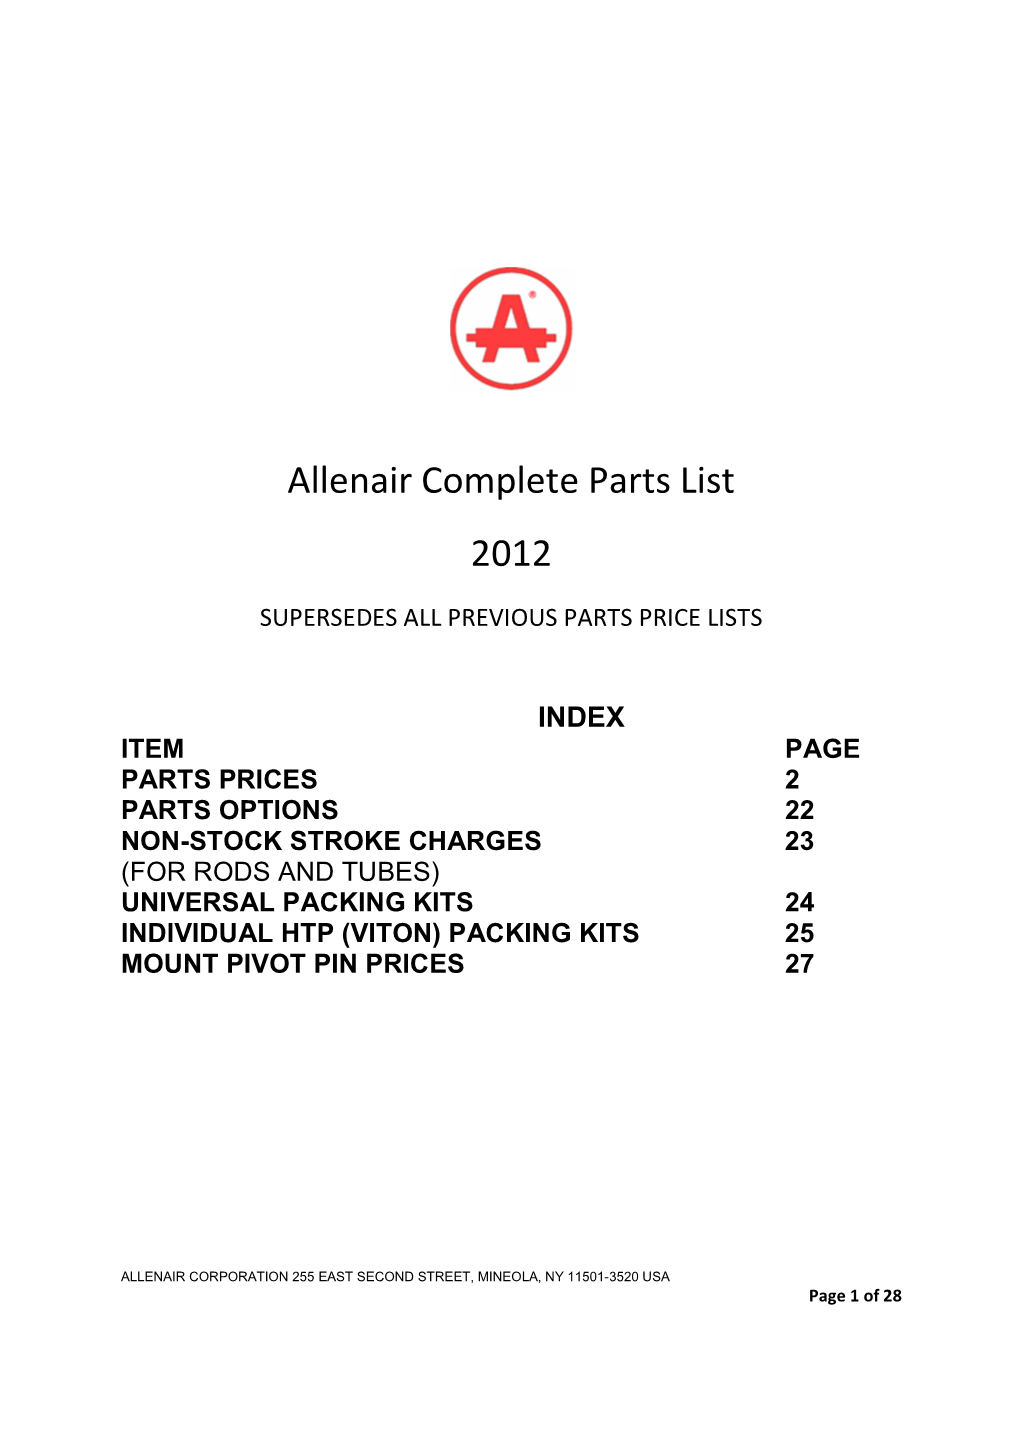 Allenair Complete Parts List 2012